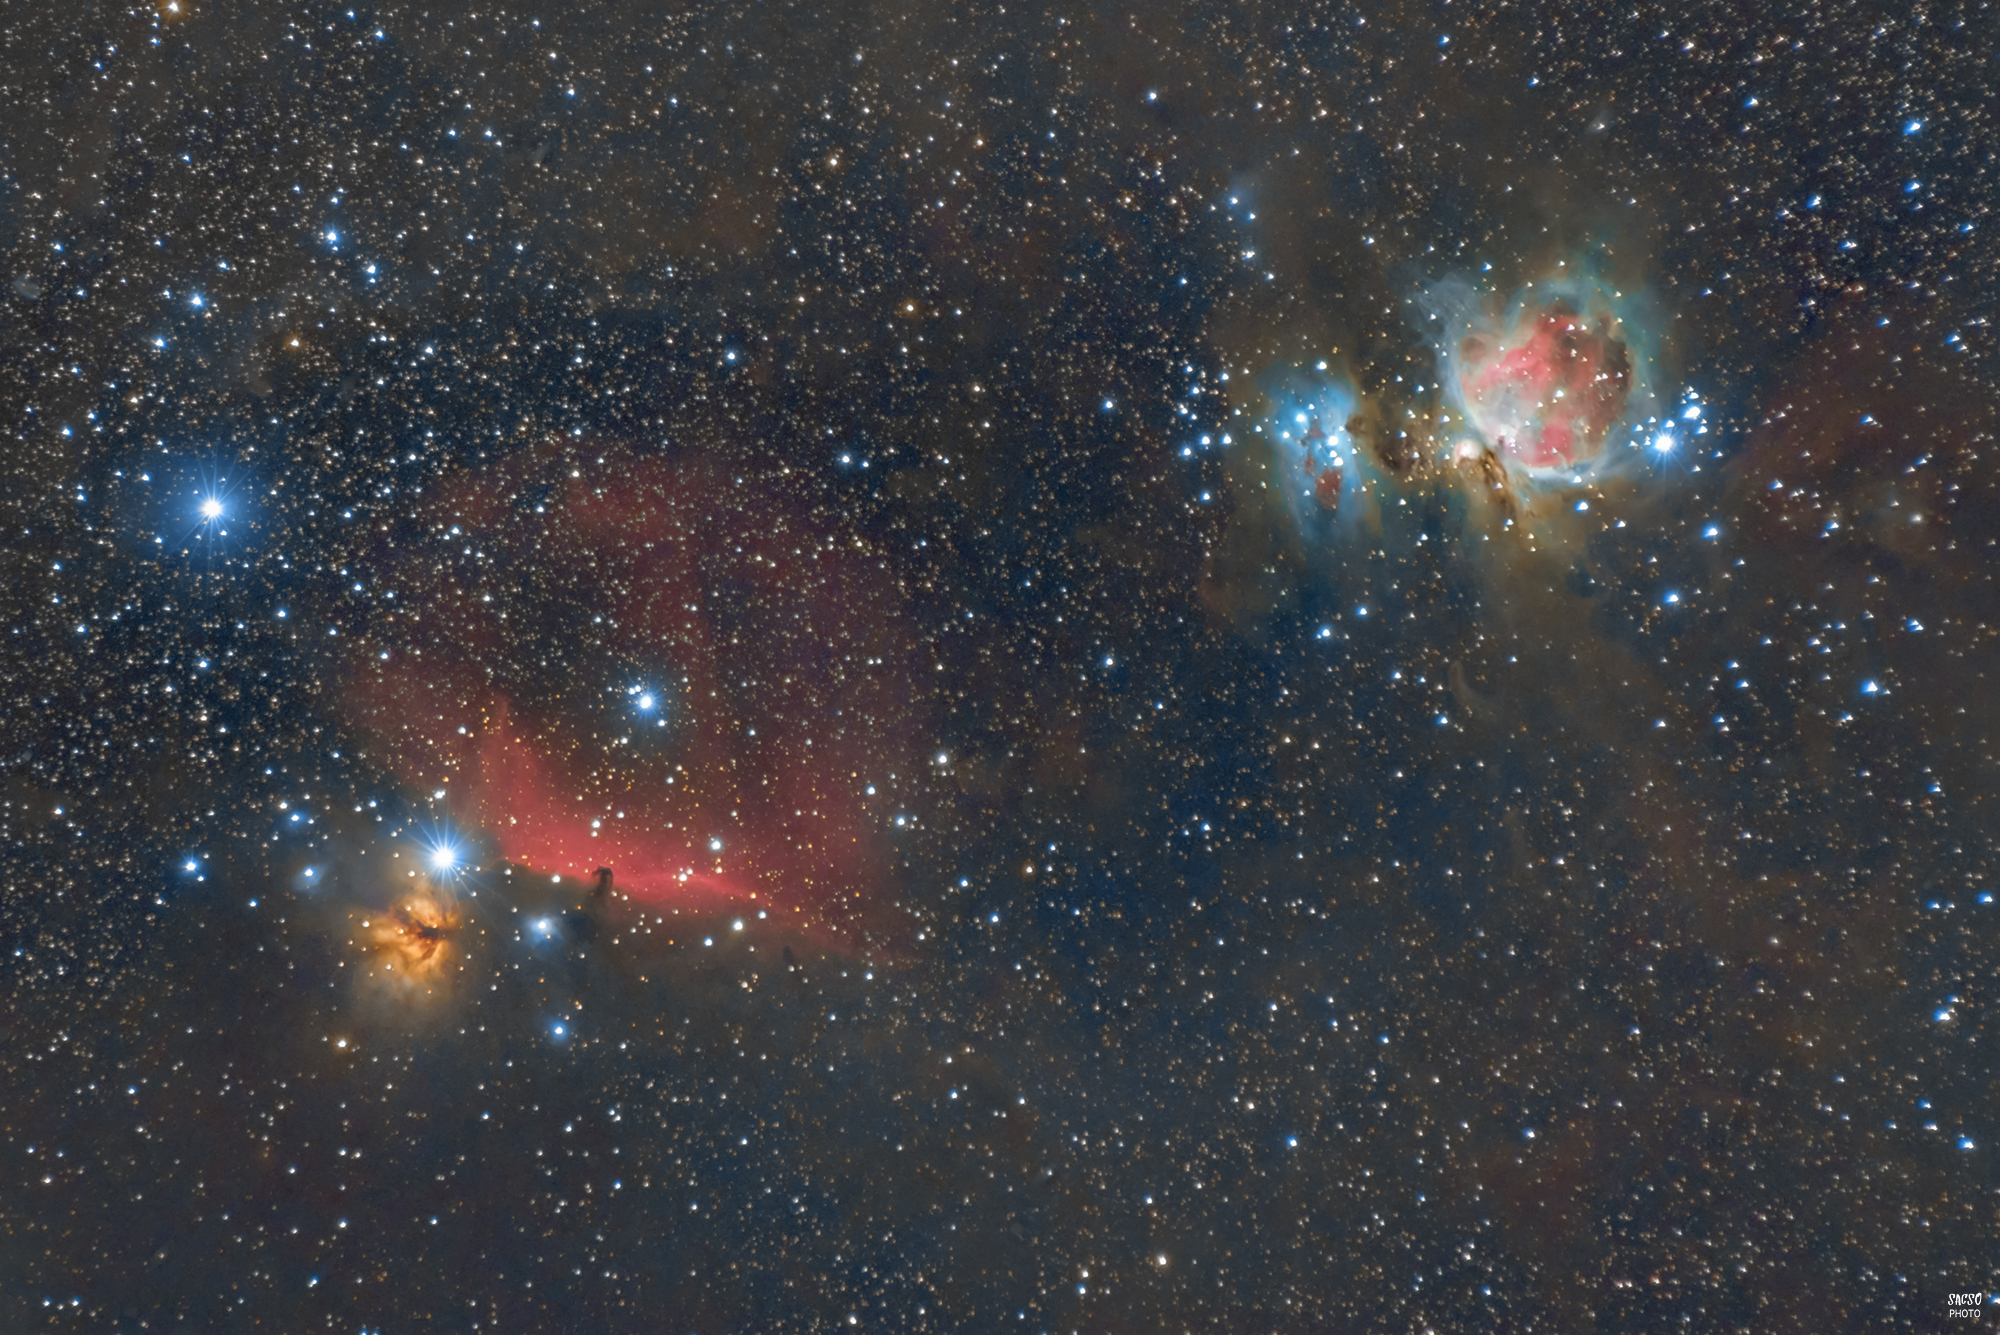 A Láng-köd, a Lófej-köd, az Orion-köd és az NGC 1977 (avagy a Futó ember-köd)